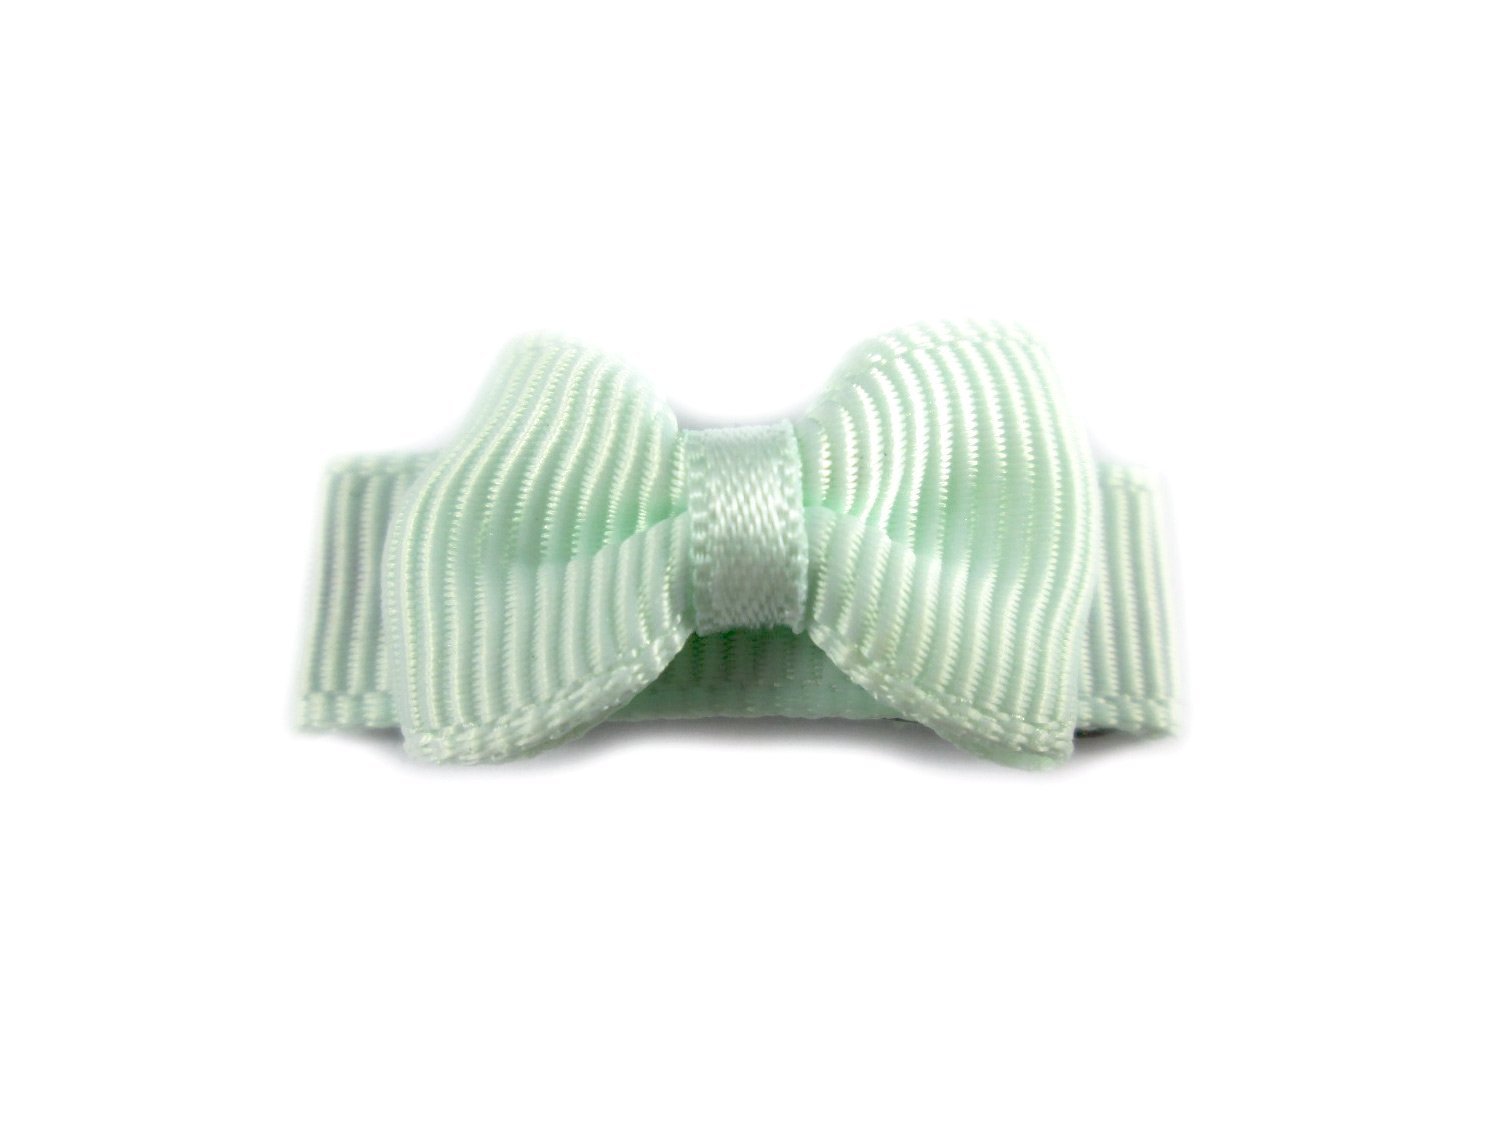 Grosgrain Tuxedo Bow Snap Clip - Single Hair Bow - Ice Mint Baby Wisp